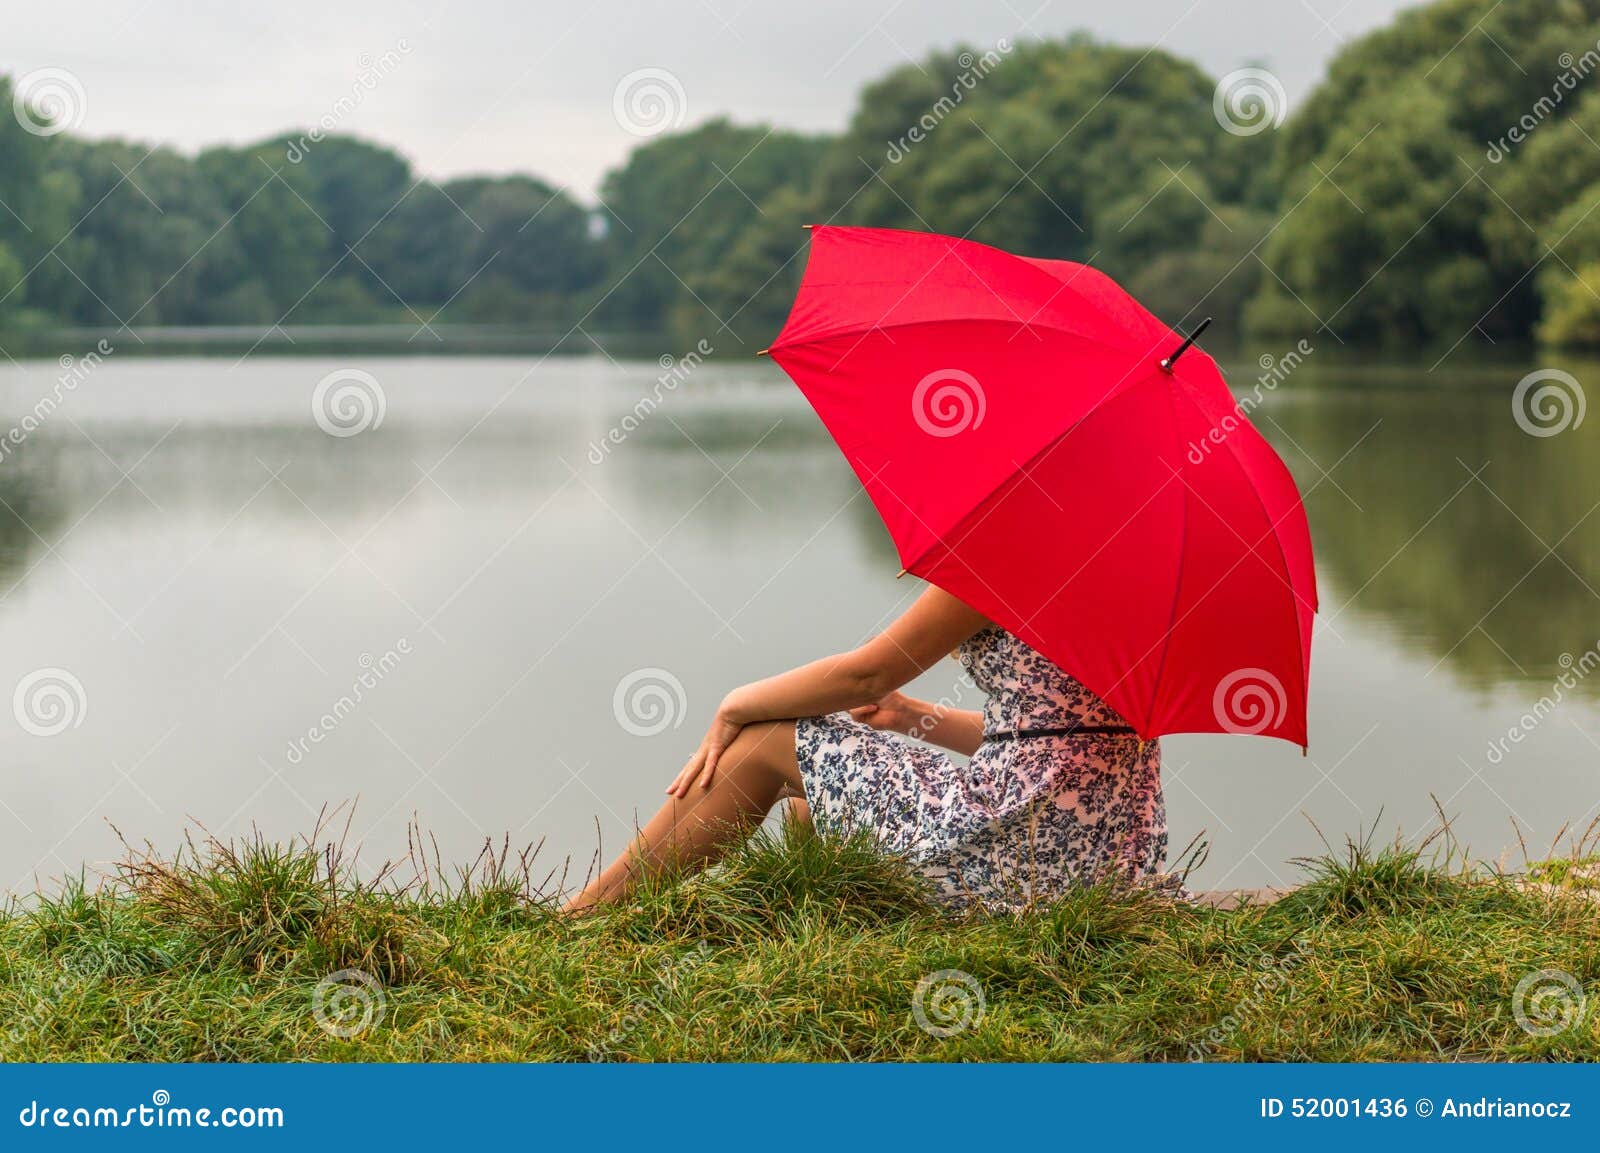 Зонтик сидит. Девушка с красным зонтом. Девочка с зонтиком сидит. Сидит с зонтом. Красный зонт в женской руке.